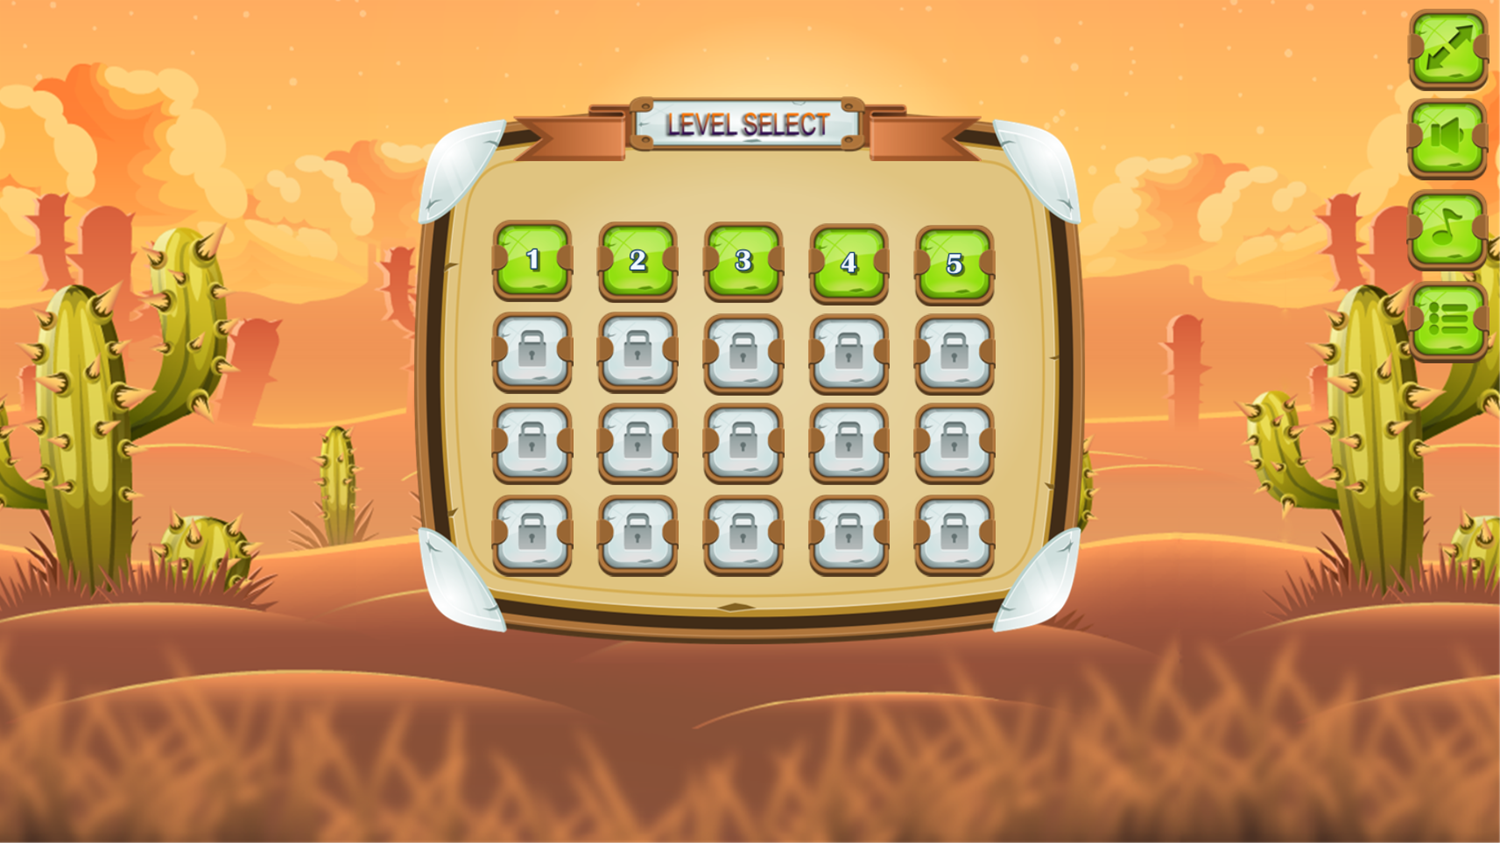 Smiley Ball Game Level Select Screenshot.